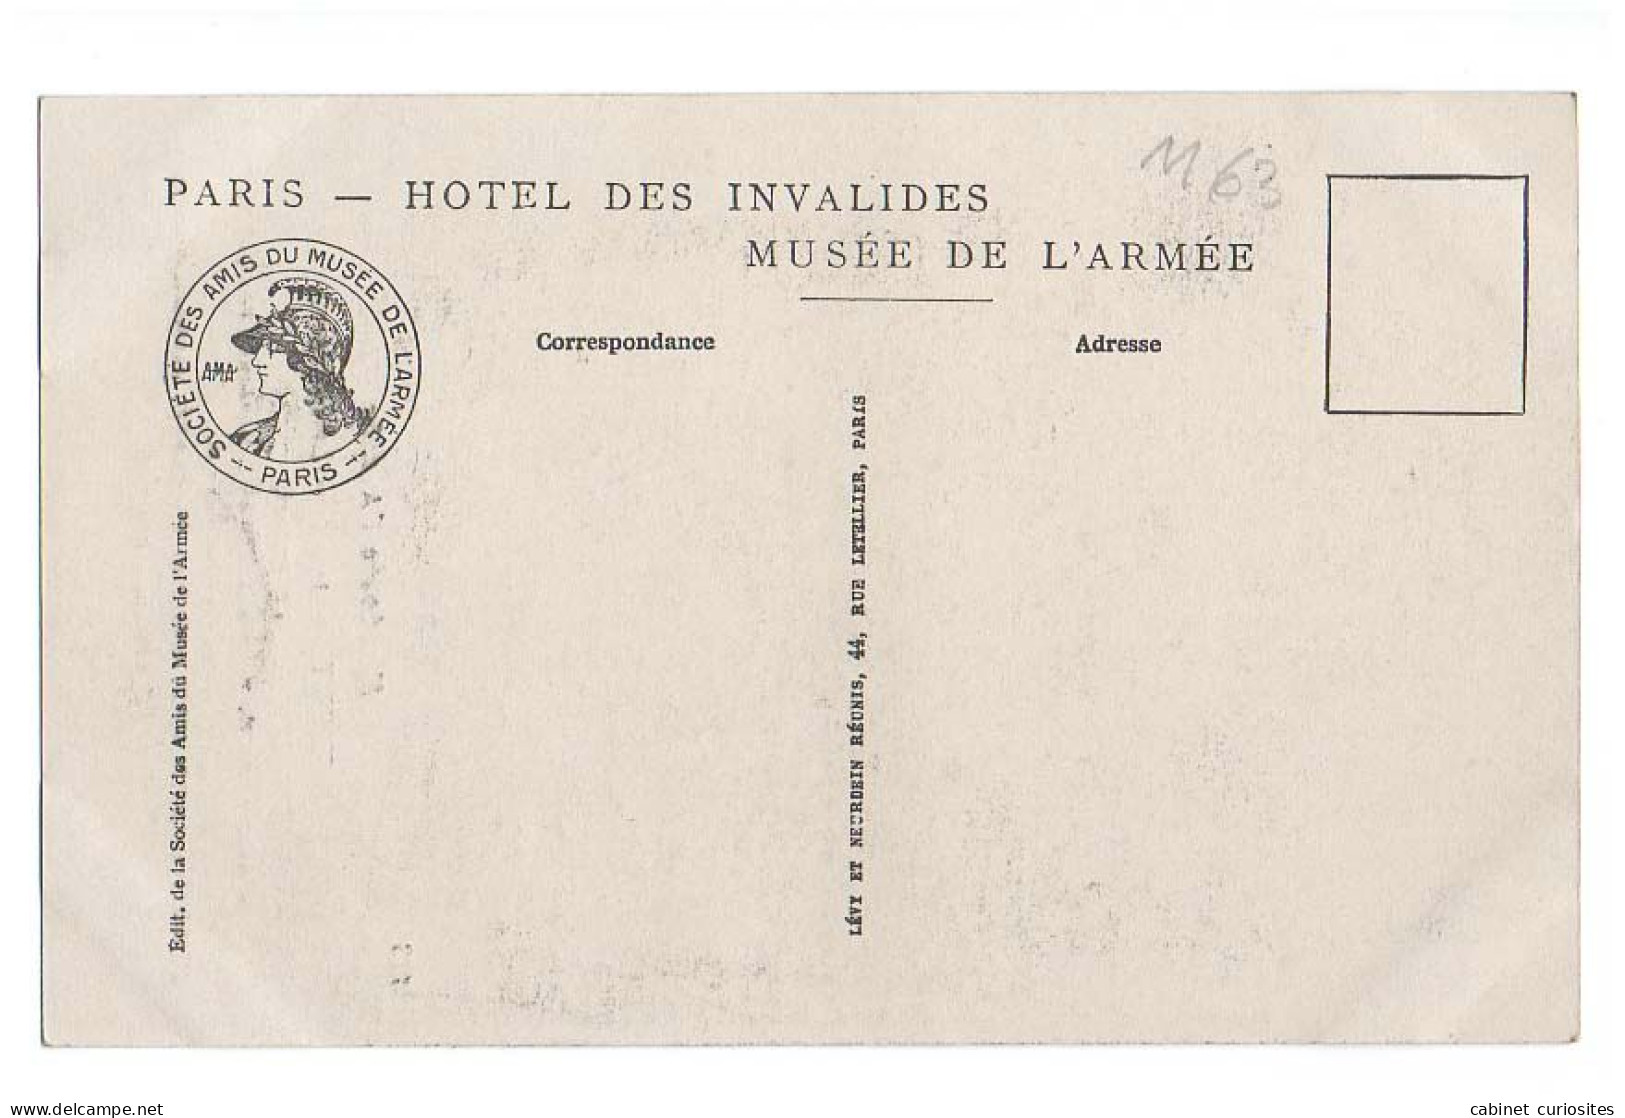 LIBÉRATEURS - Aubert 1918 - Le Poilu - Foch, Pétain, Fayolle, Clémenceau, De Castelnau, Poincaré, Galliéni, Joffre - Personaggi